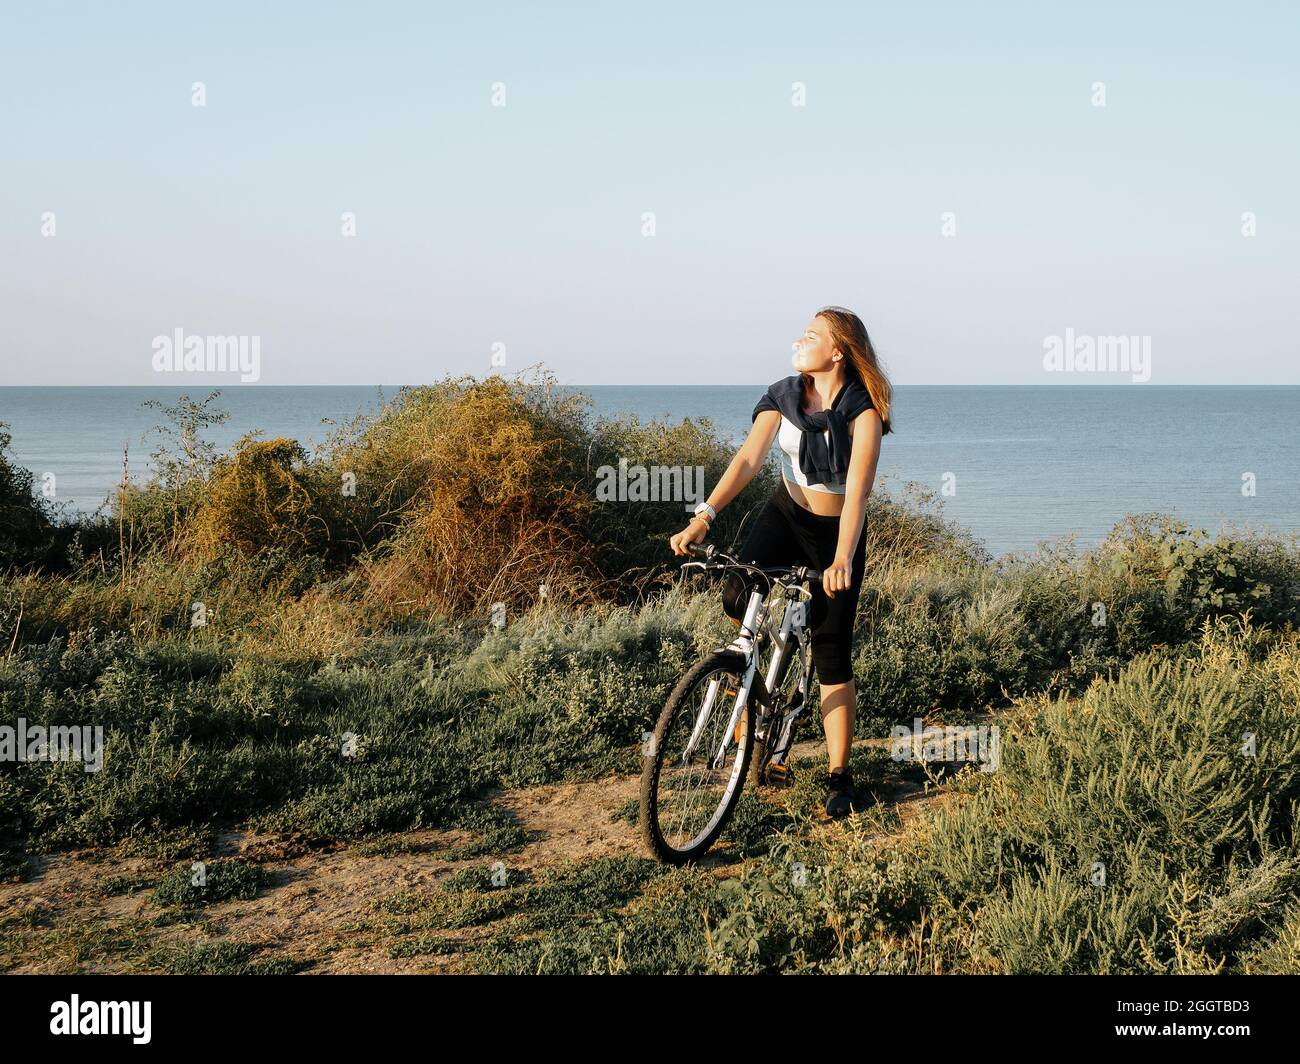 Giovane ragazza sportiva con una bici bianca sulla riva del mare in una mattinata estiva all'alba. Allenamento sportivo all'aperto. Immagine colorata. Foto Stock